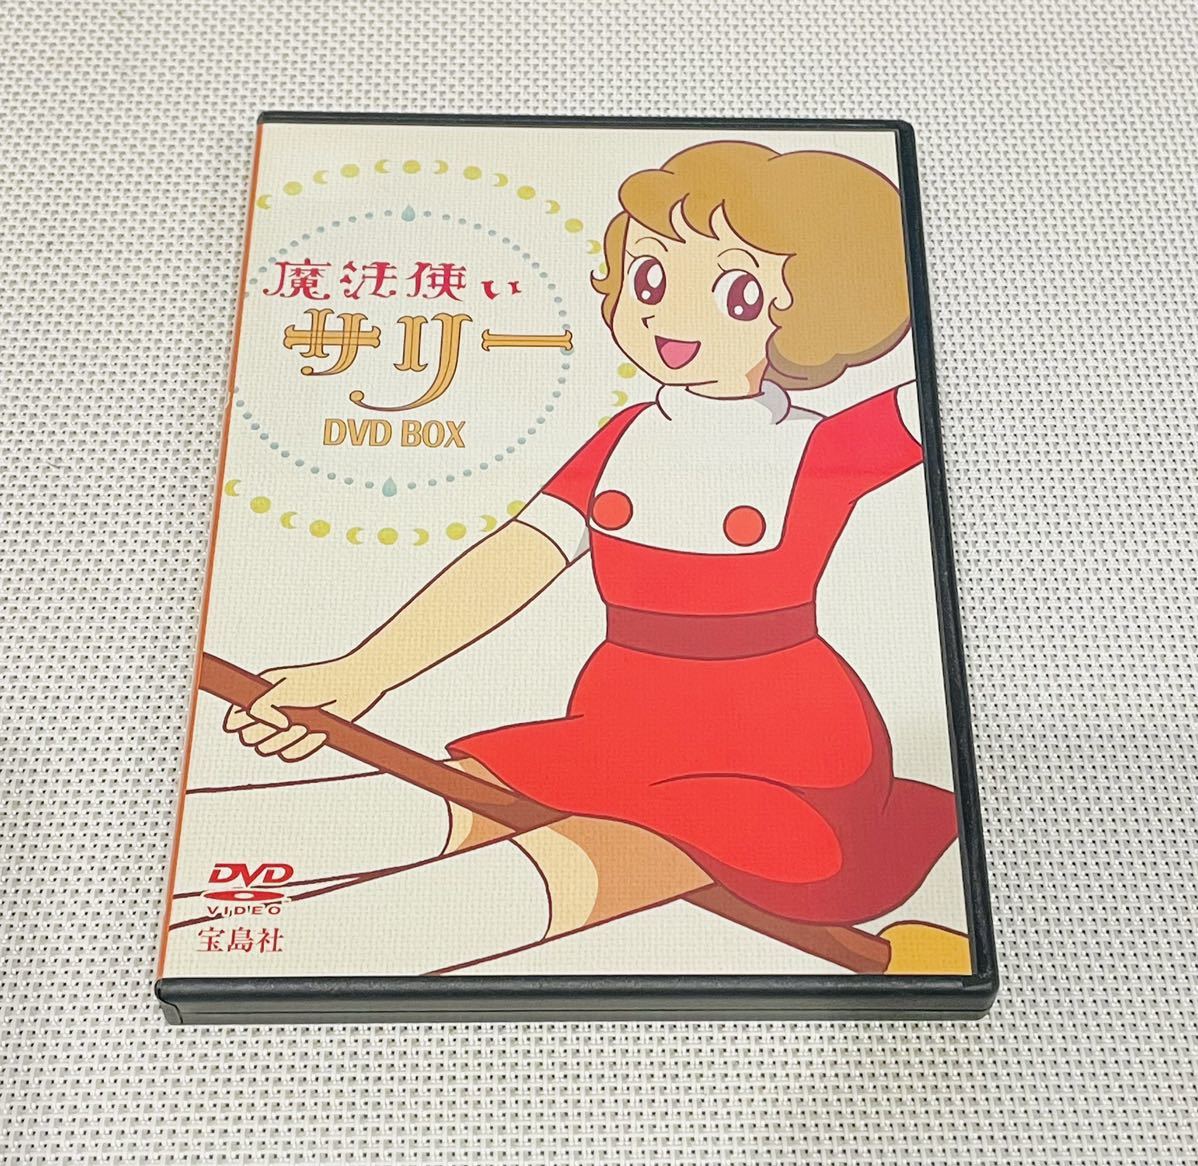 魔法使いサリー DVDBOX 2枚組 アニメ8話収録 送料無料 アニメ の画像1